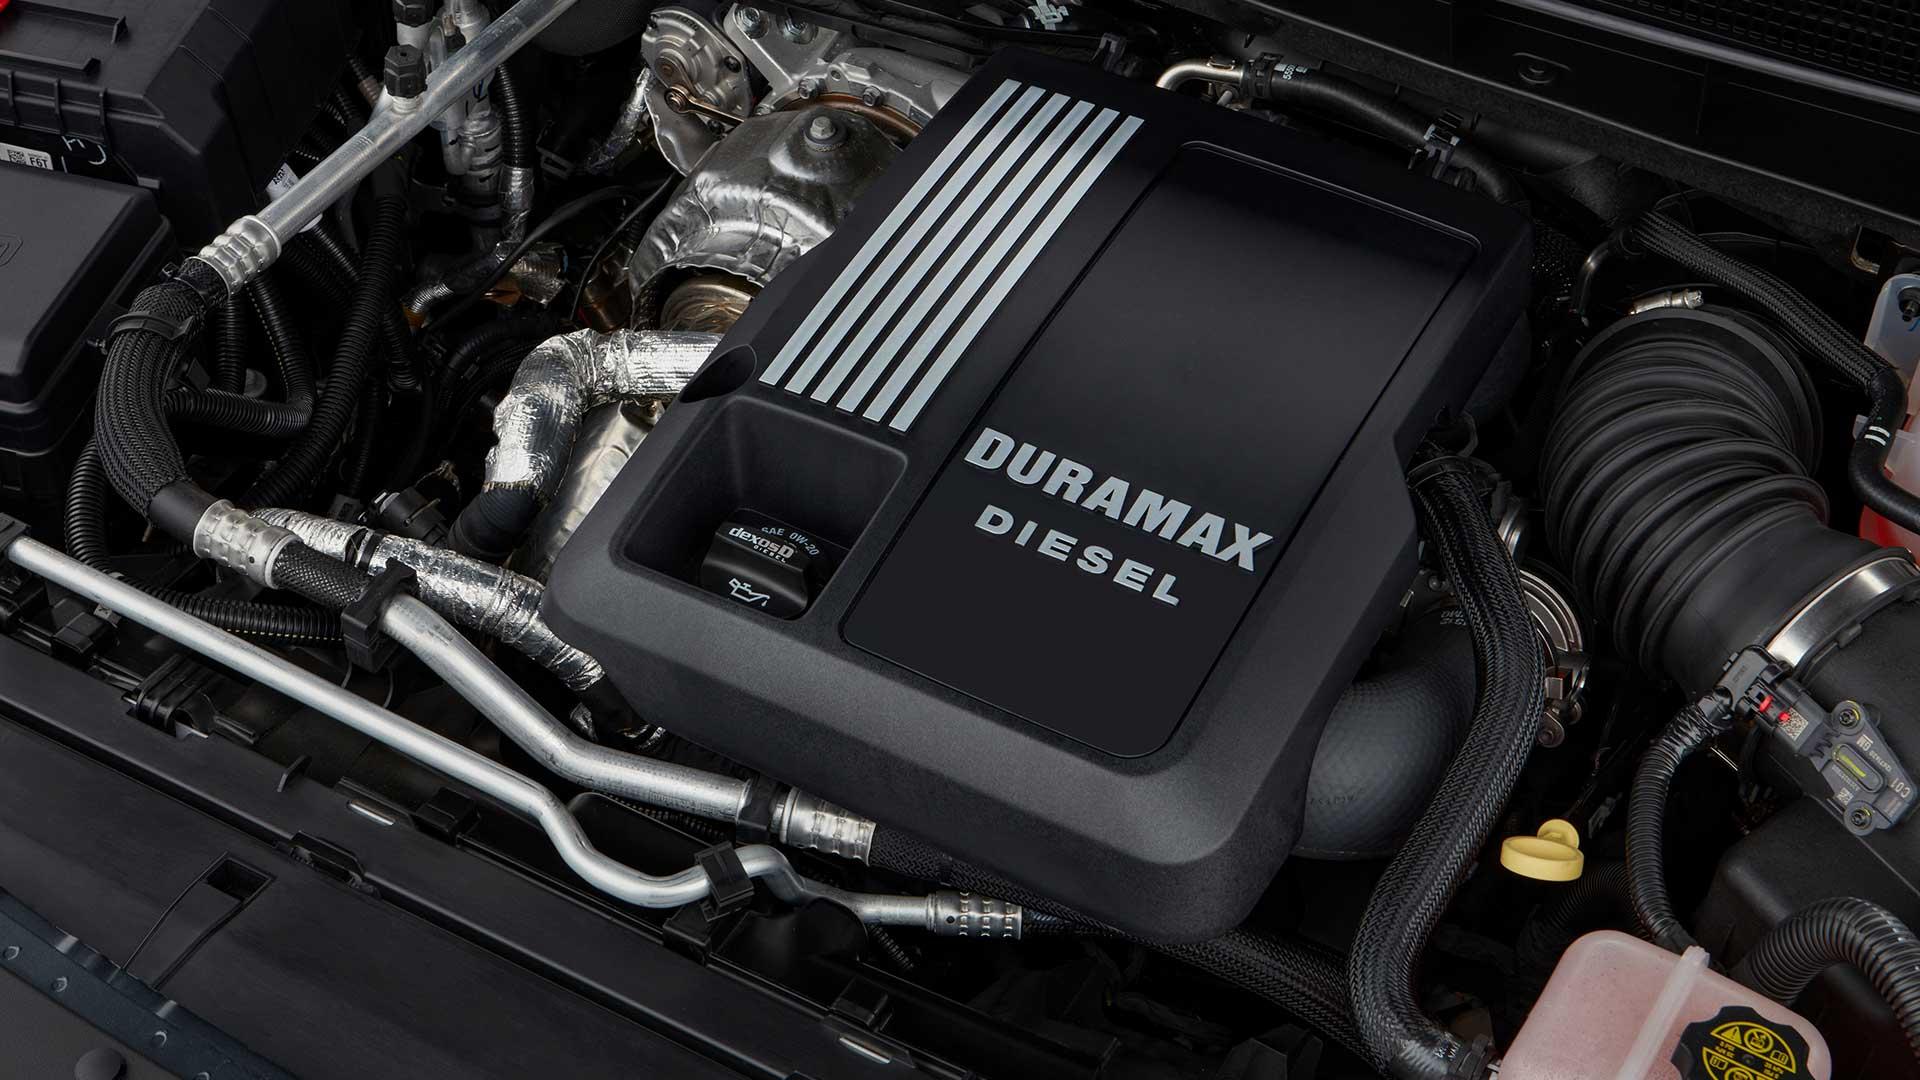 GMC Duramax diesel engine